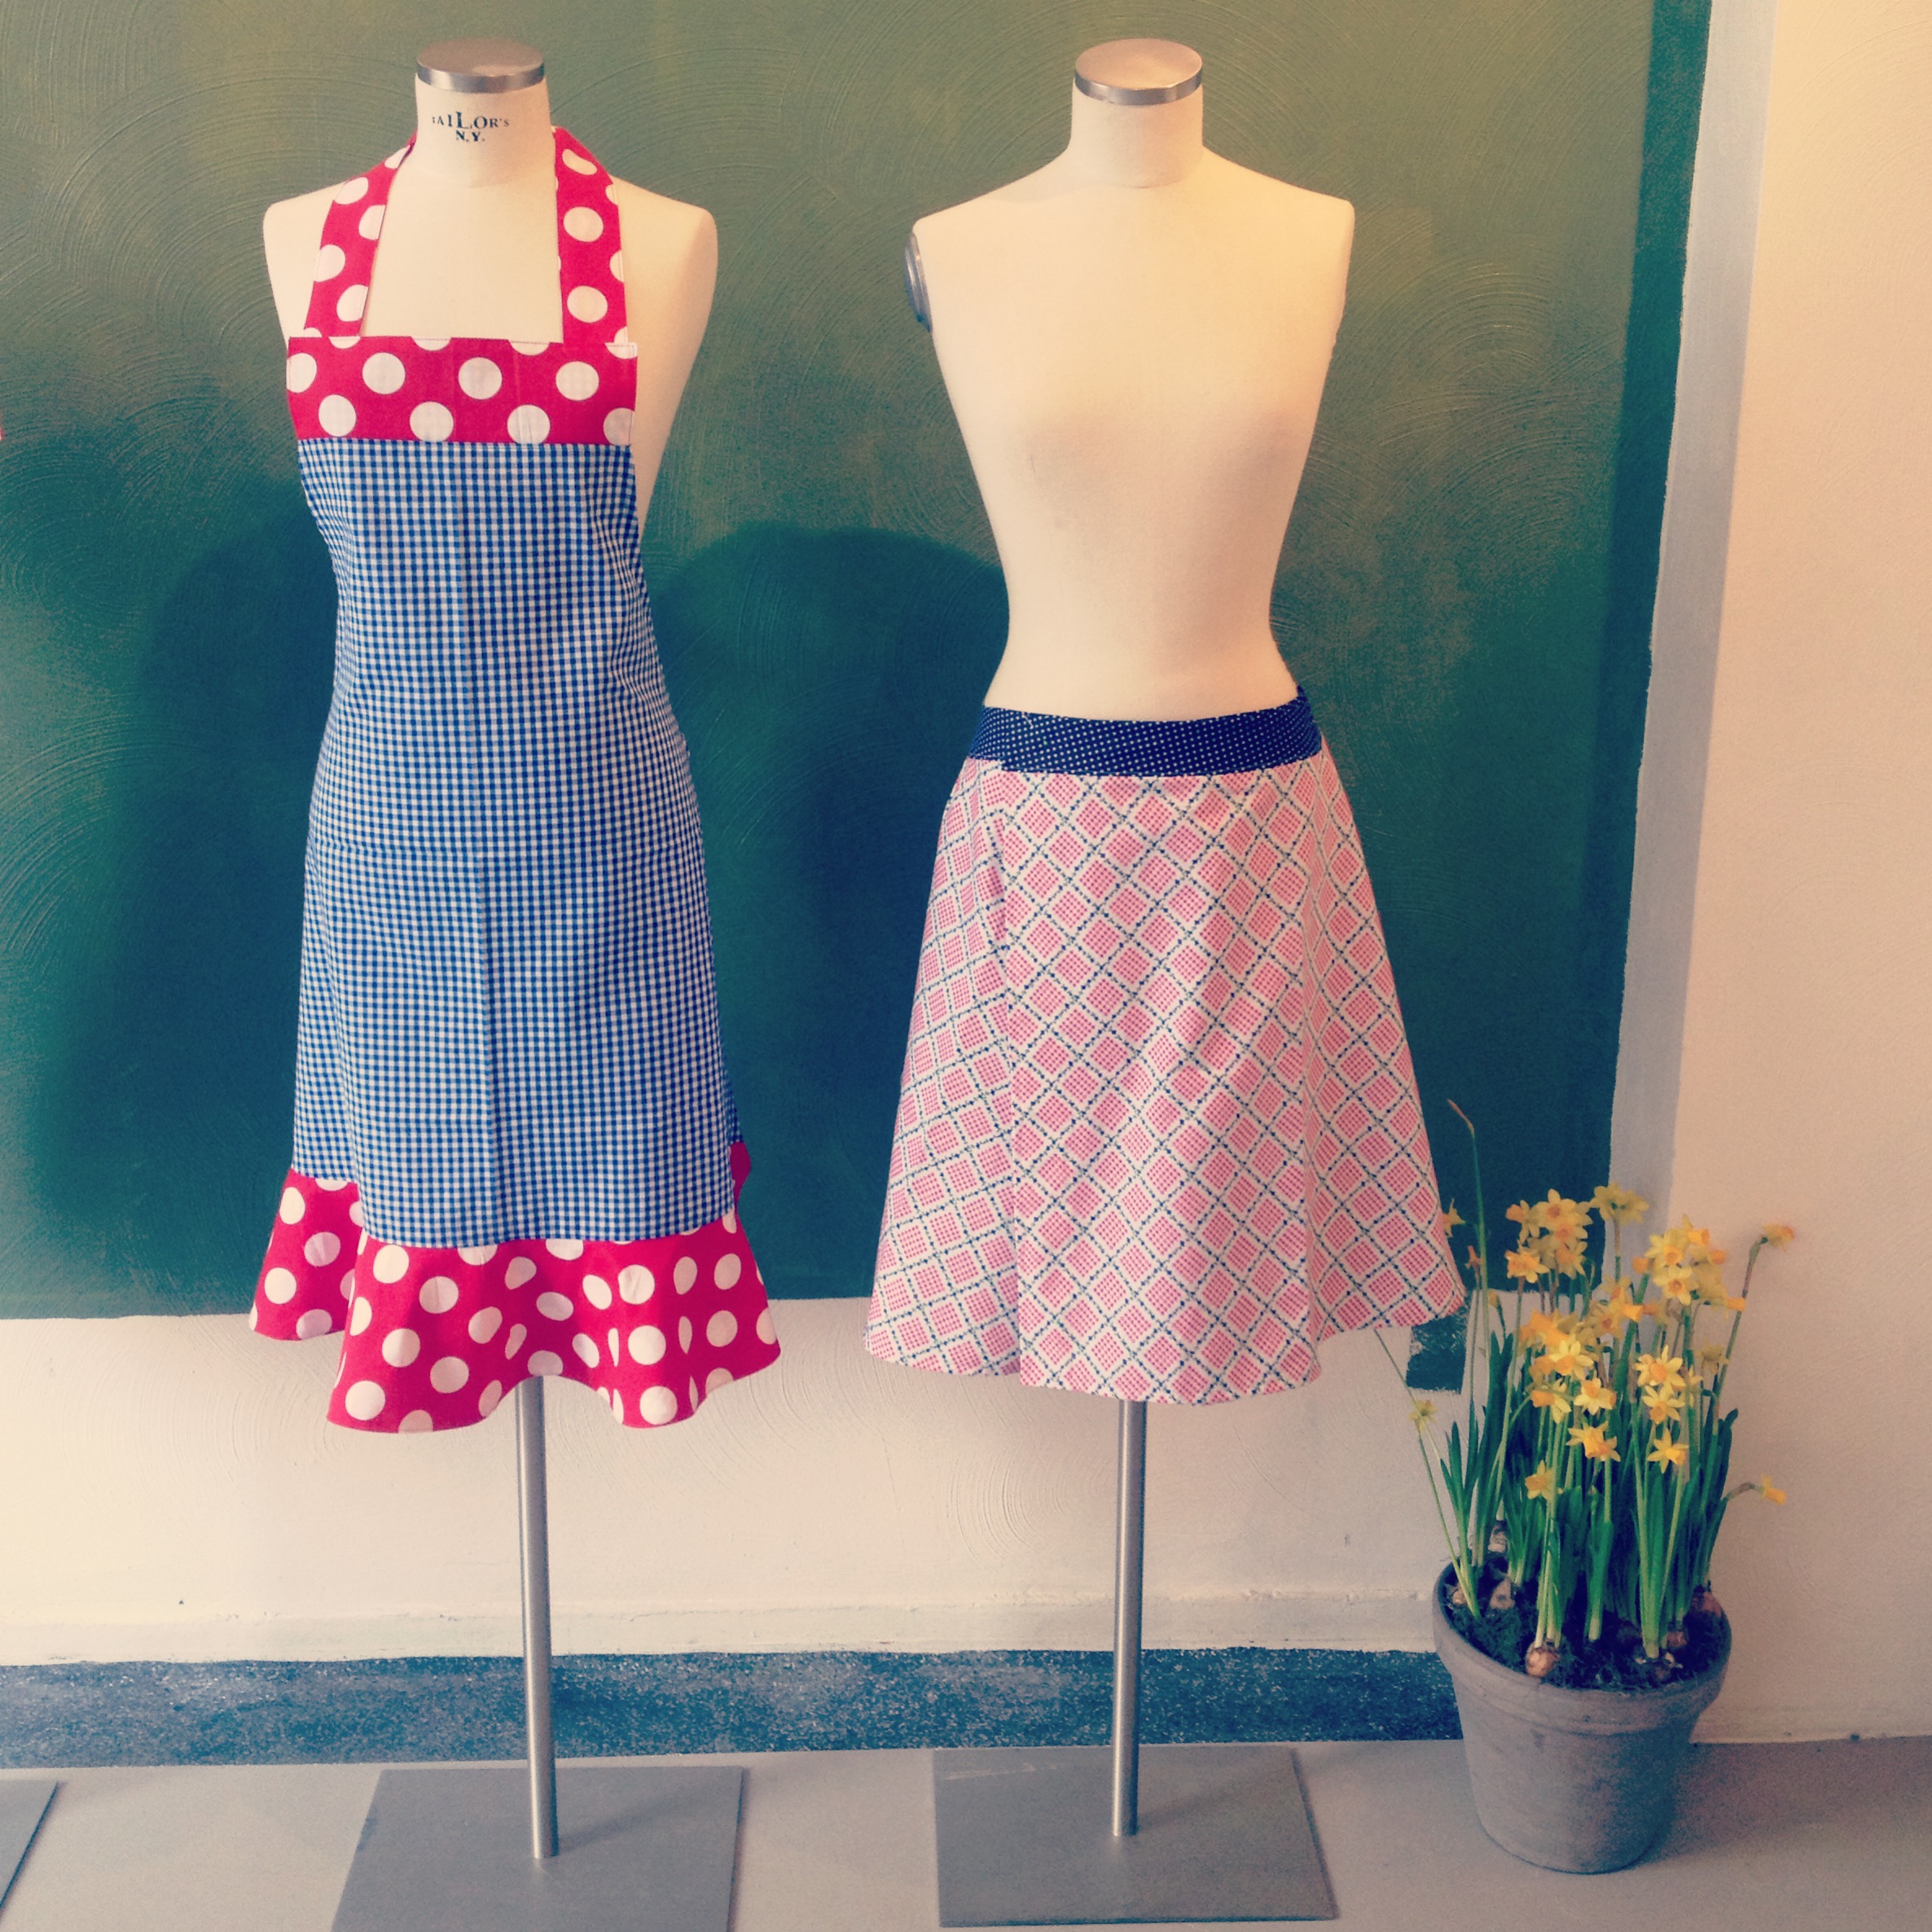 Fonkelnieuw Gezien in de krant: doe een cursus zelf kleding maken! | Studio Jurk IL-55